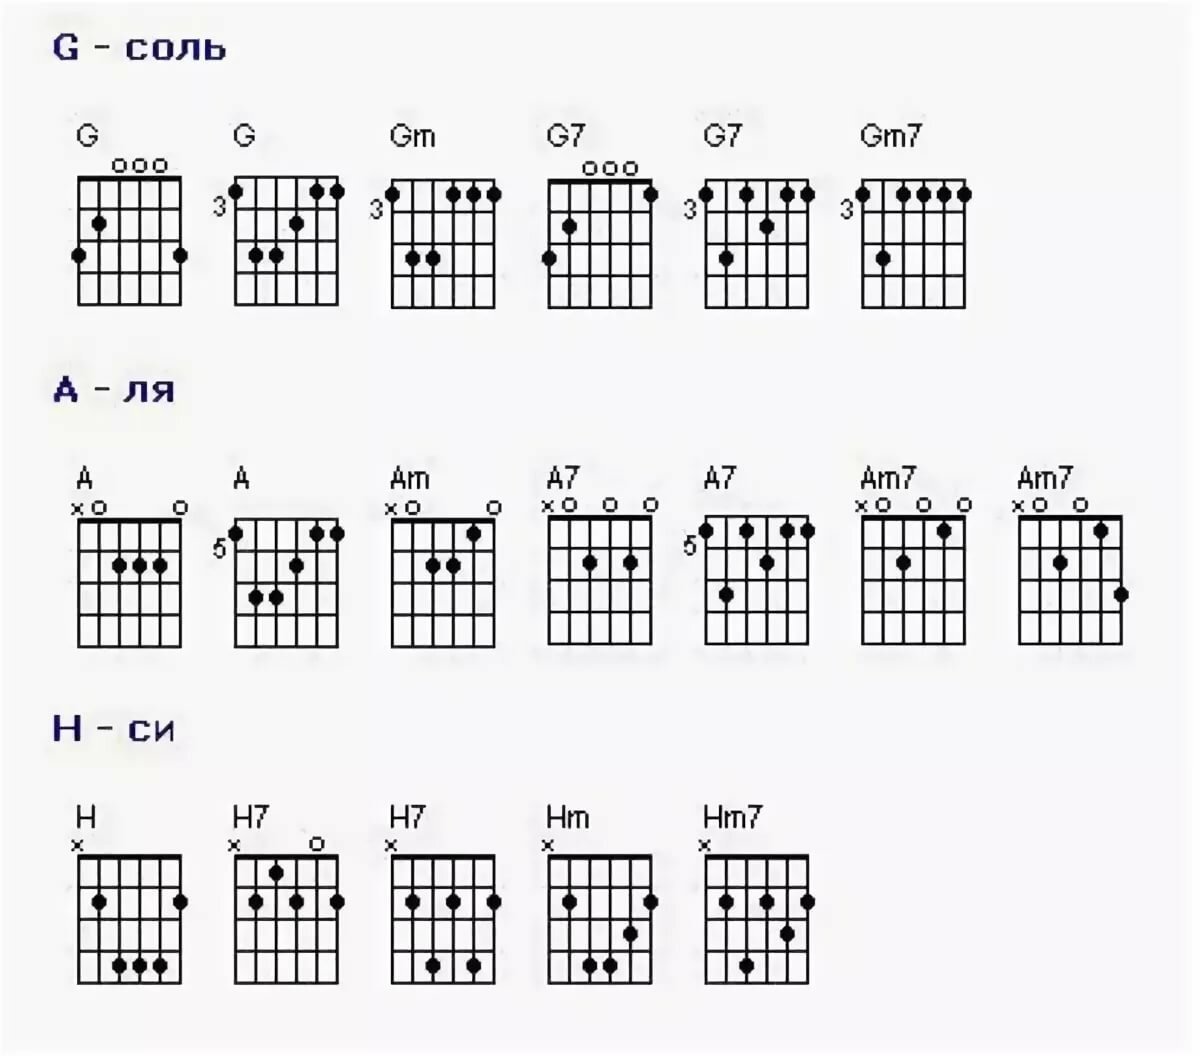 Второй аккорд на гитаре. Аккорды для гитары для начинающих 6 струн. Базовые аккорды на гитаре 6 струн. Аккорды на гитаре 6 струн схема. Схемы аккордов 6 струнной гитары.